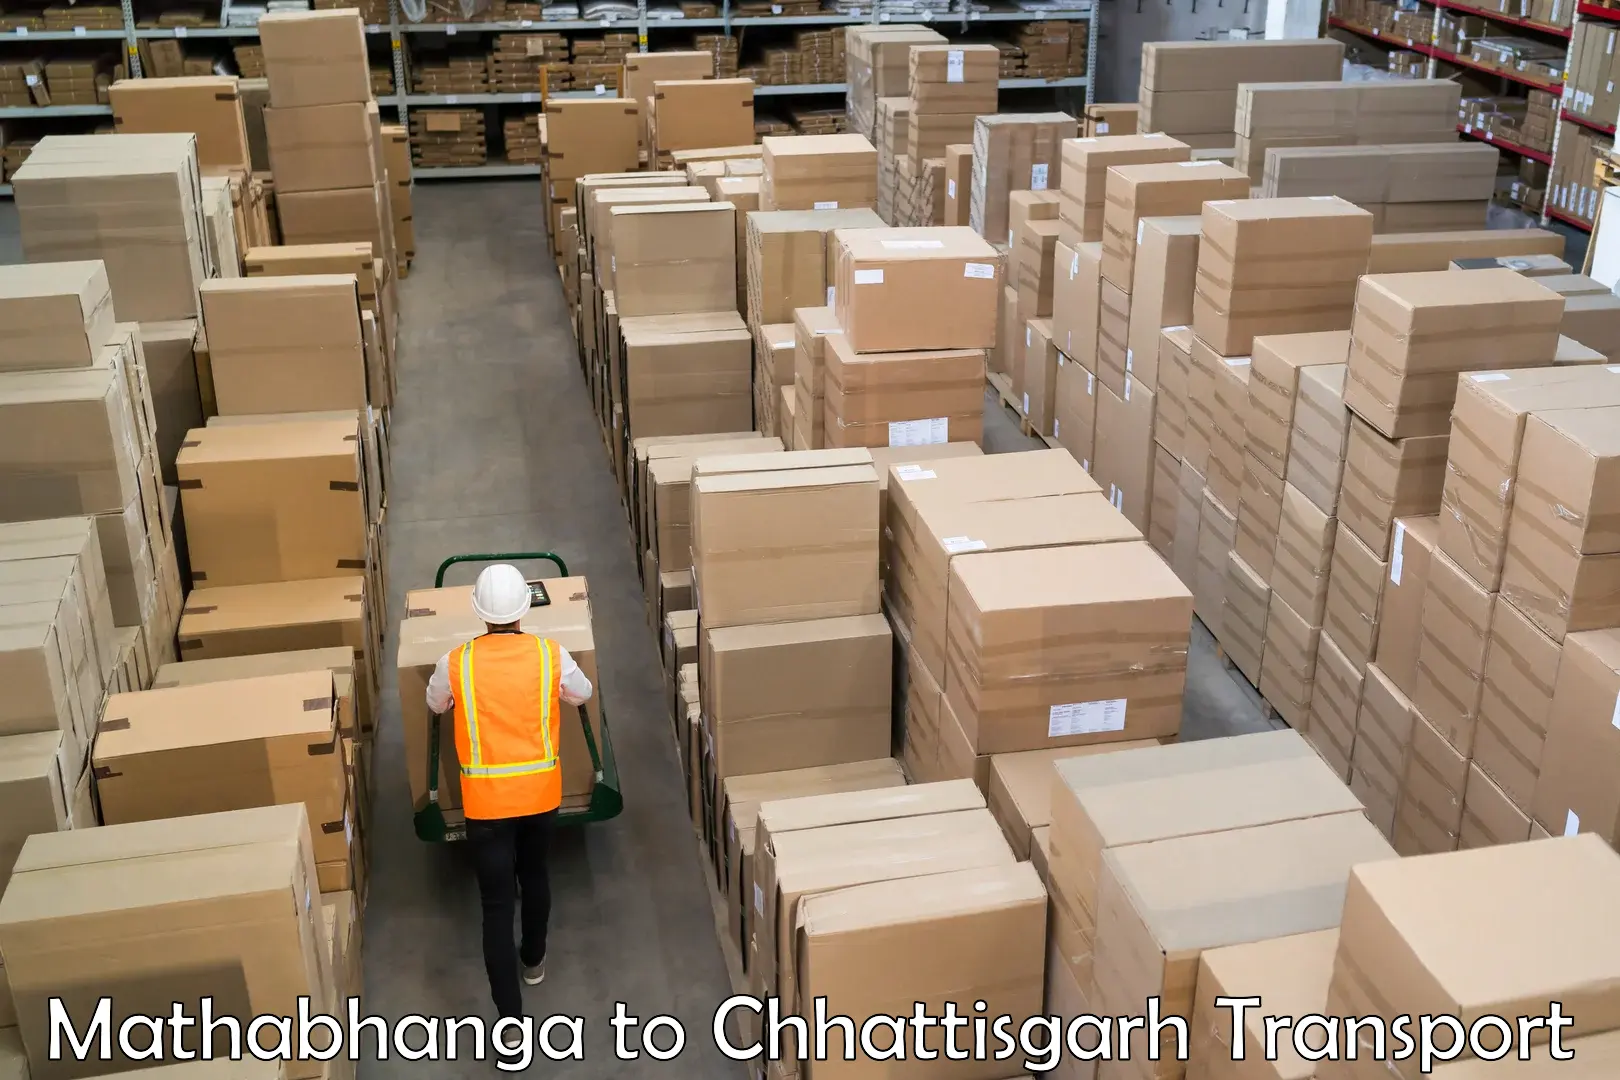 Bike shipping service Mathabhanga to Raigarh Chhattisgarh